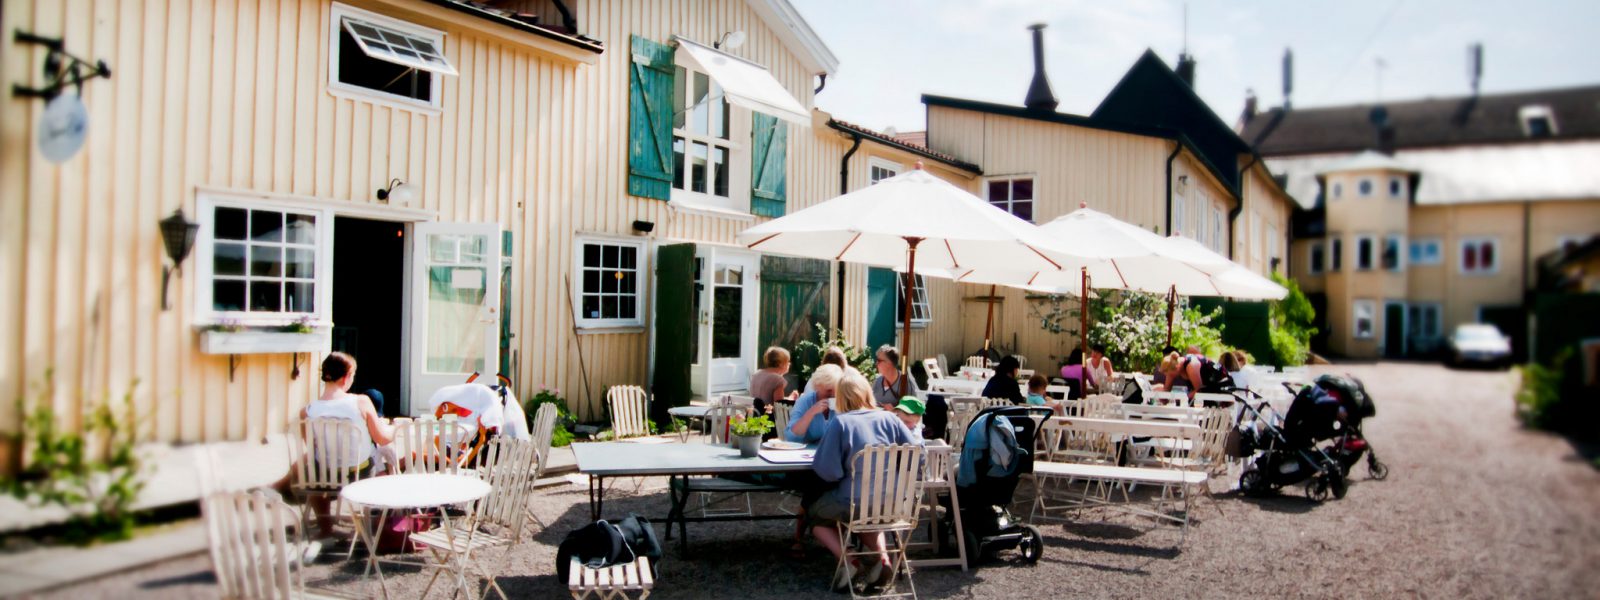 Kafé i Alingsås